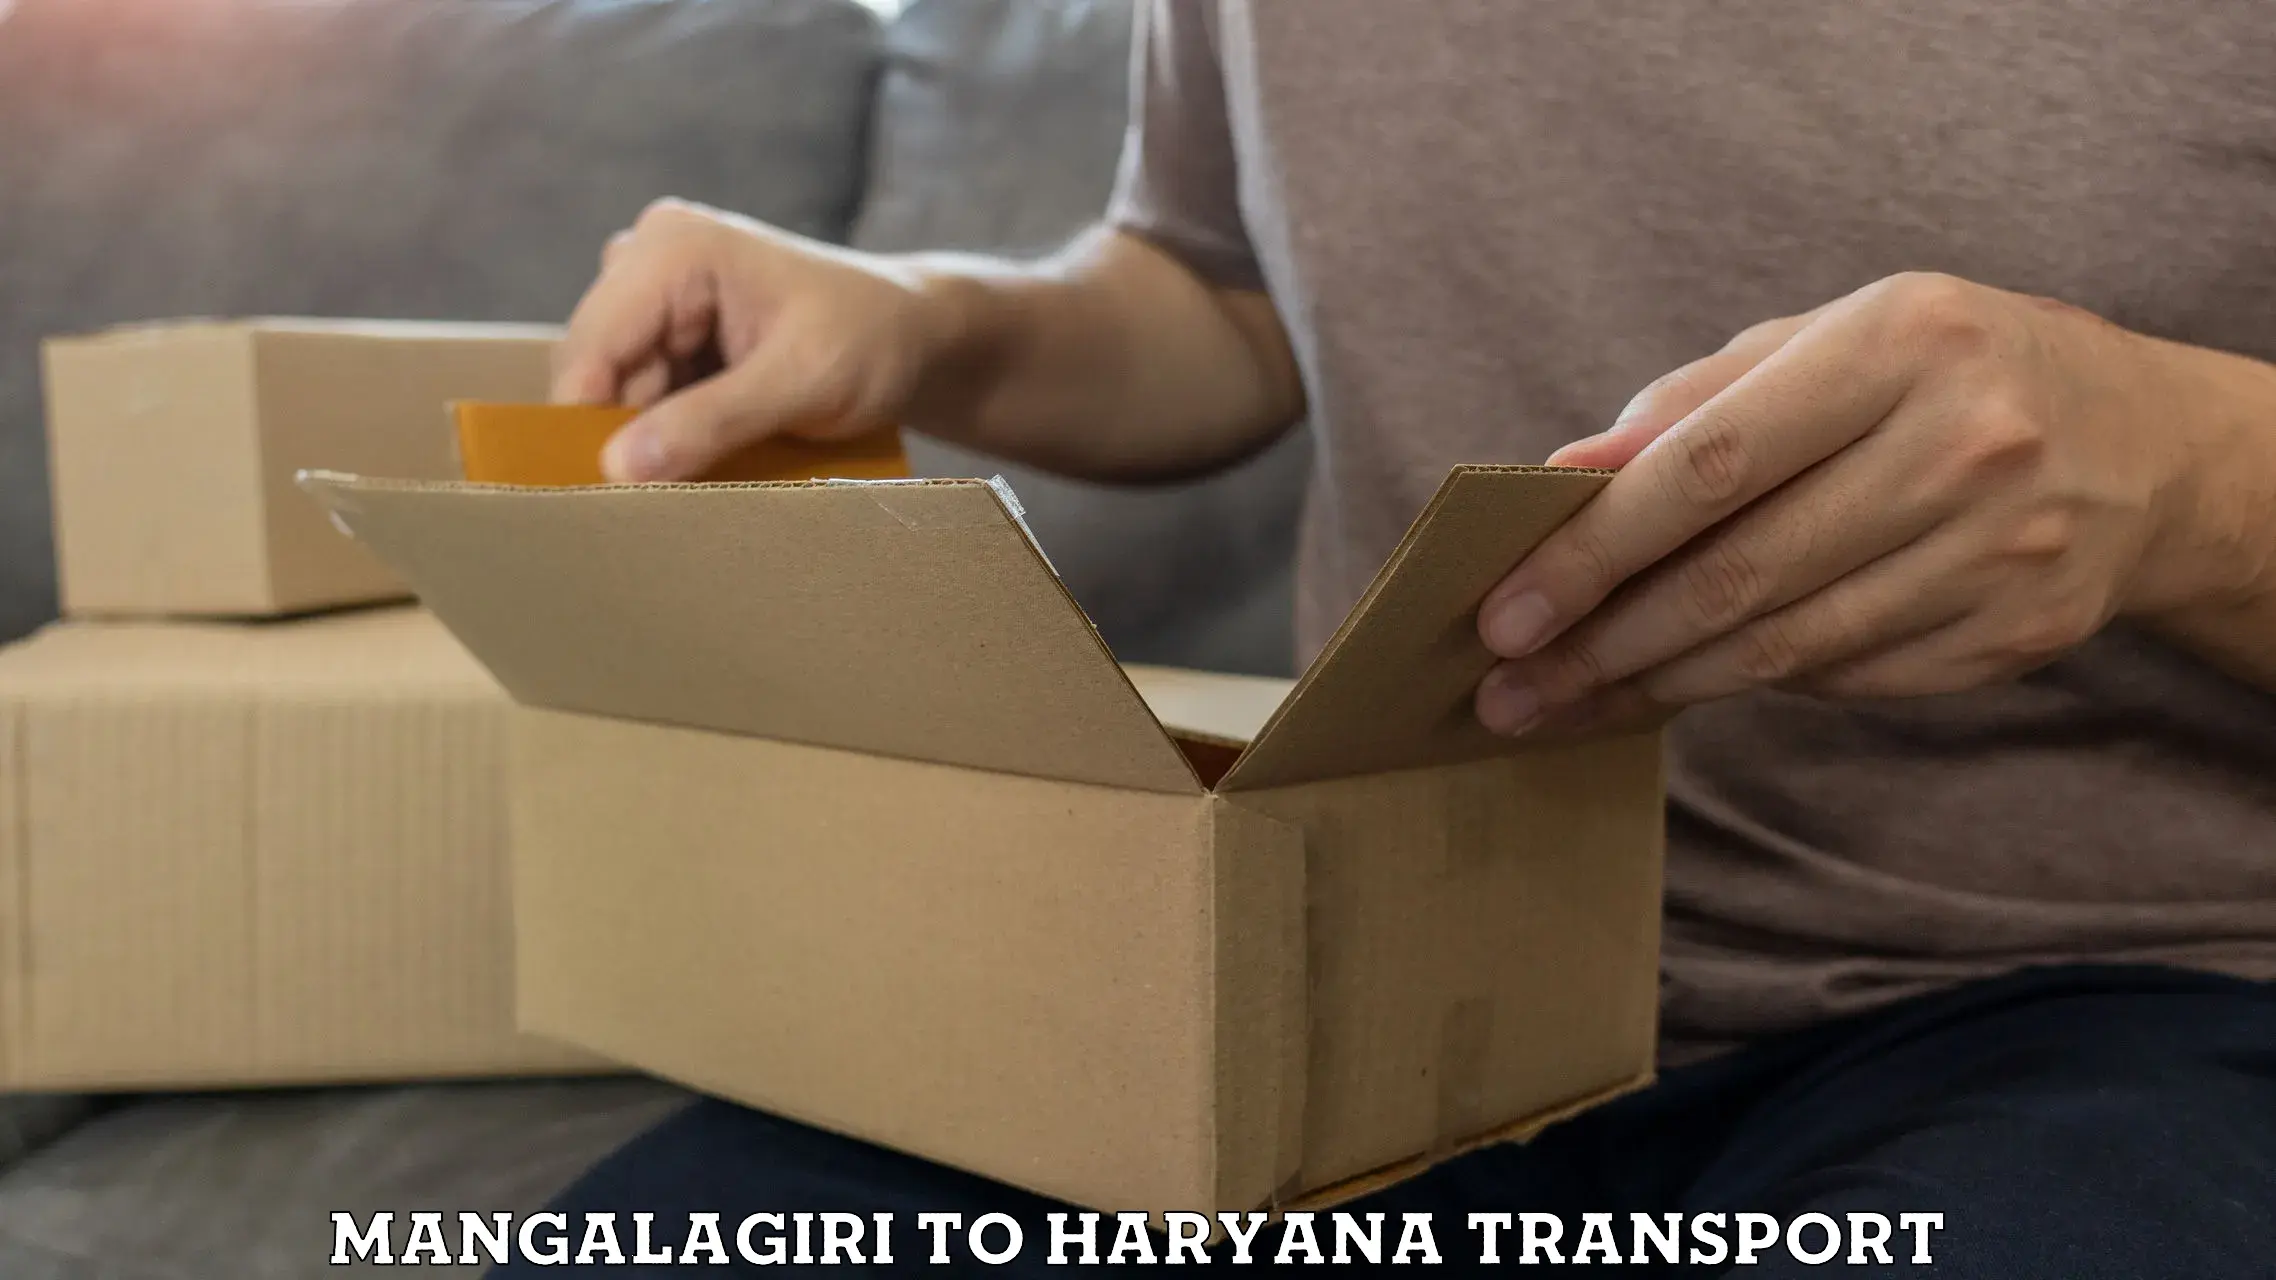 Furniture transport service Mangalagiri to Bilaspur Haryana